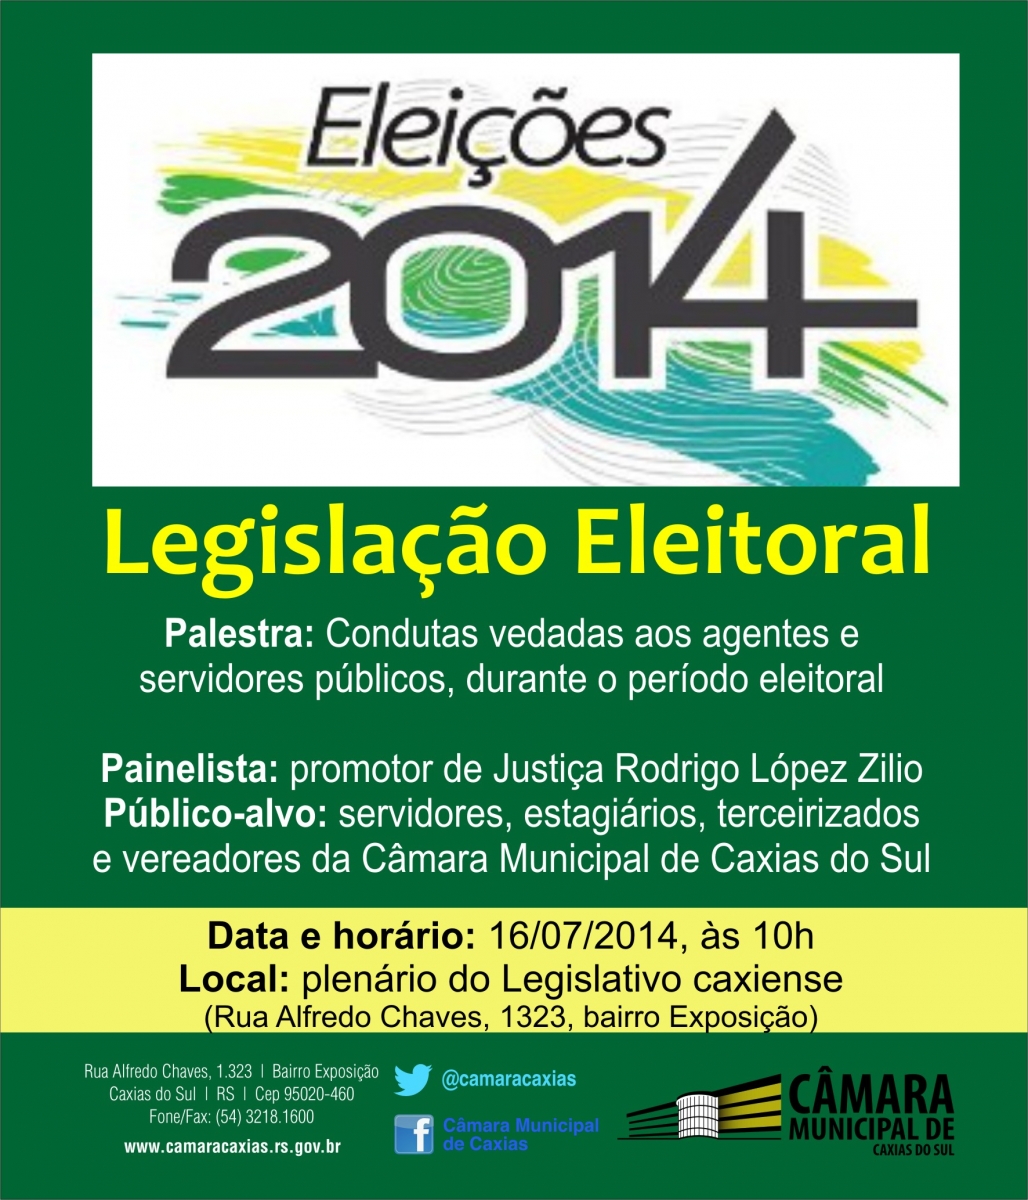 Promotor Rodrigo López Zilio faz palestra sobre legislação eleitoral para o Parlamento caxiense